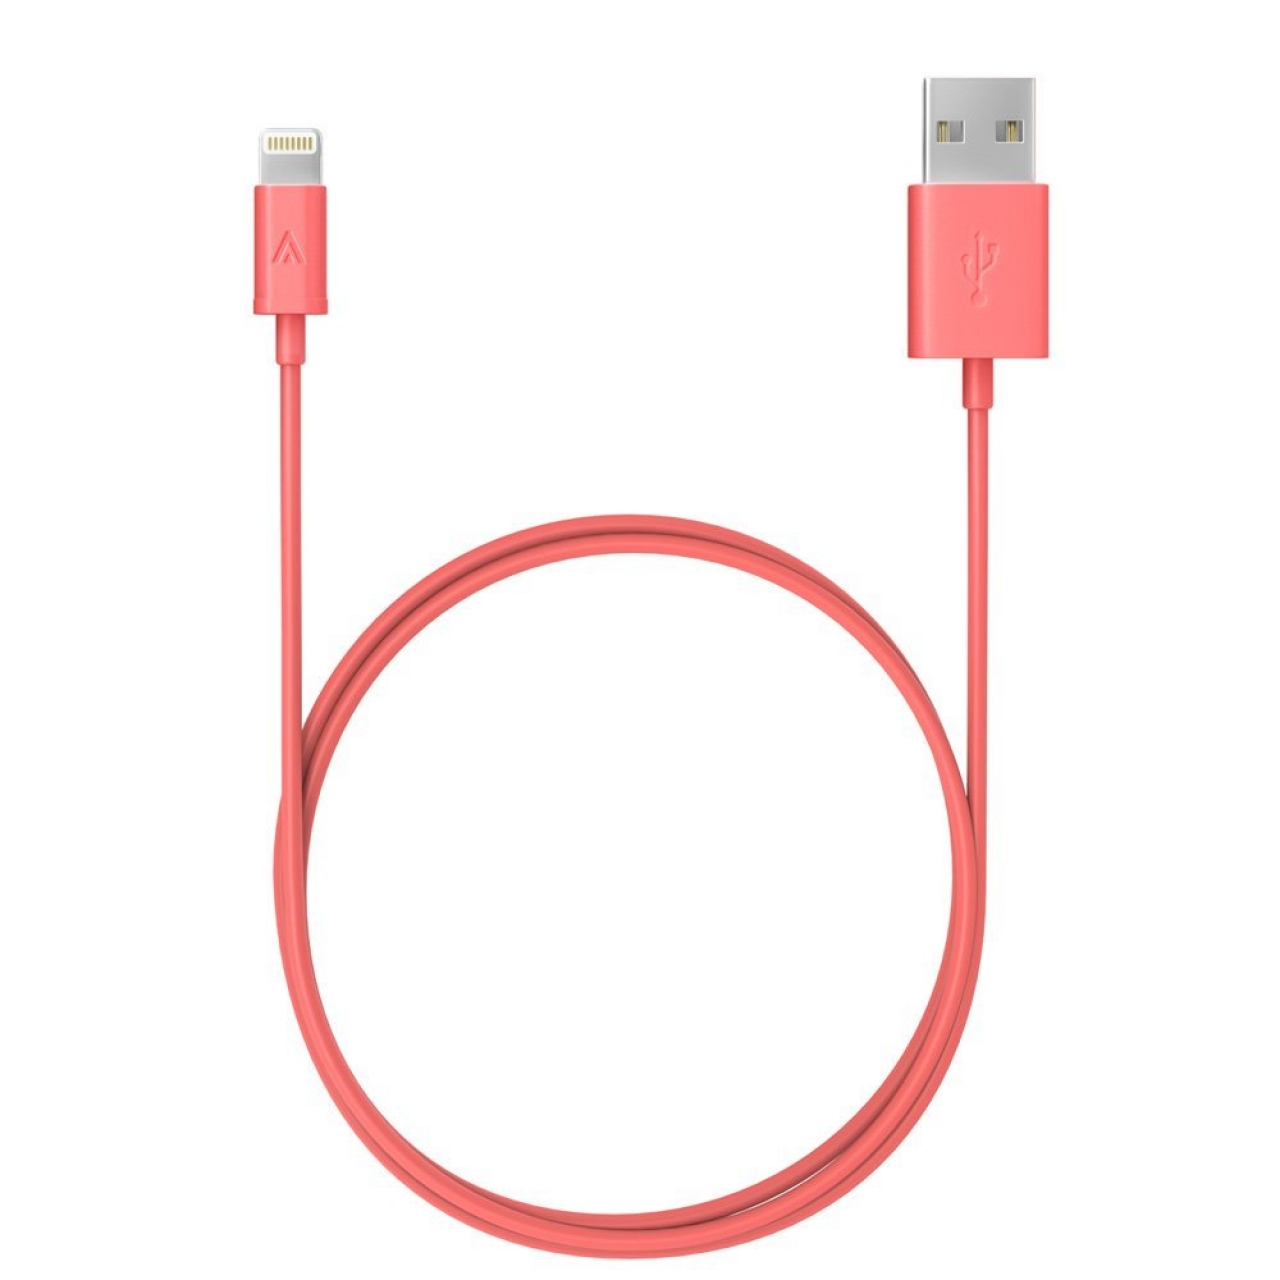 Gå rundt Elskede Gamle tider Anker Lightning to USB Cable - 3ft (Pink) - iClarified